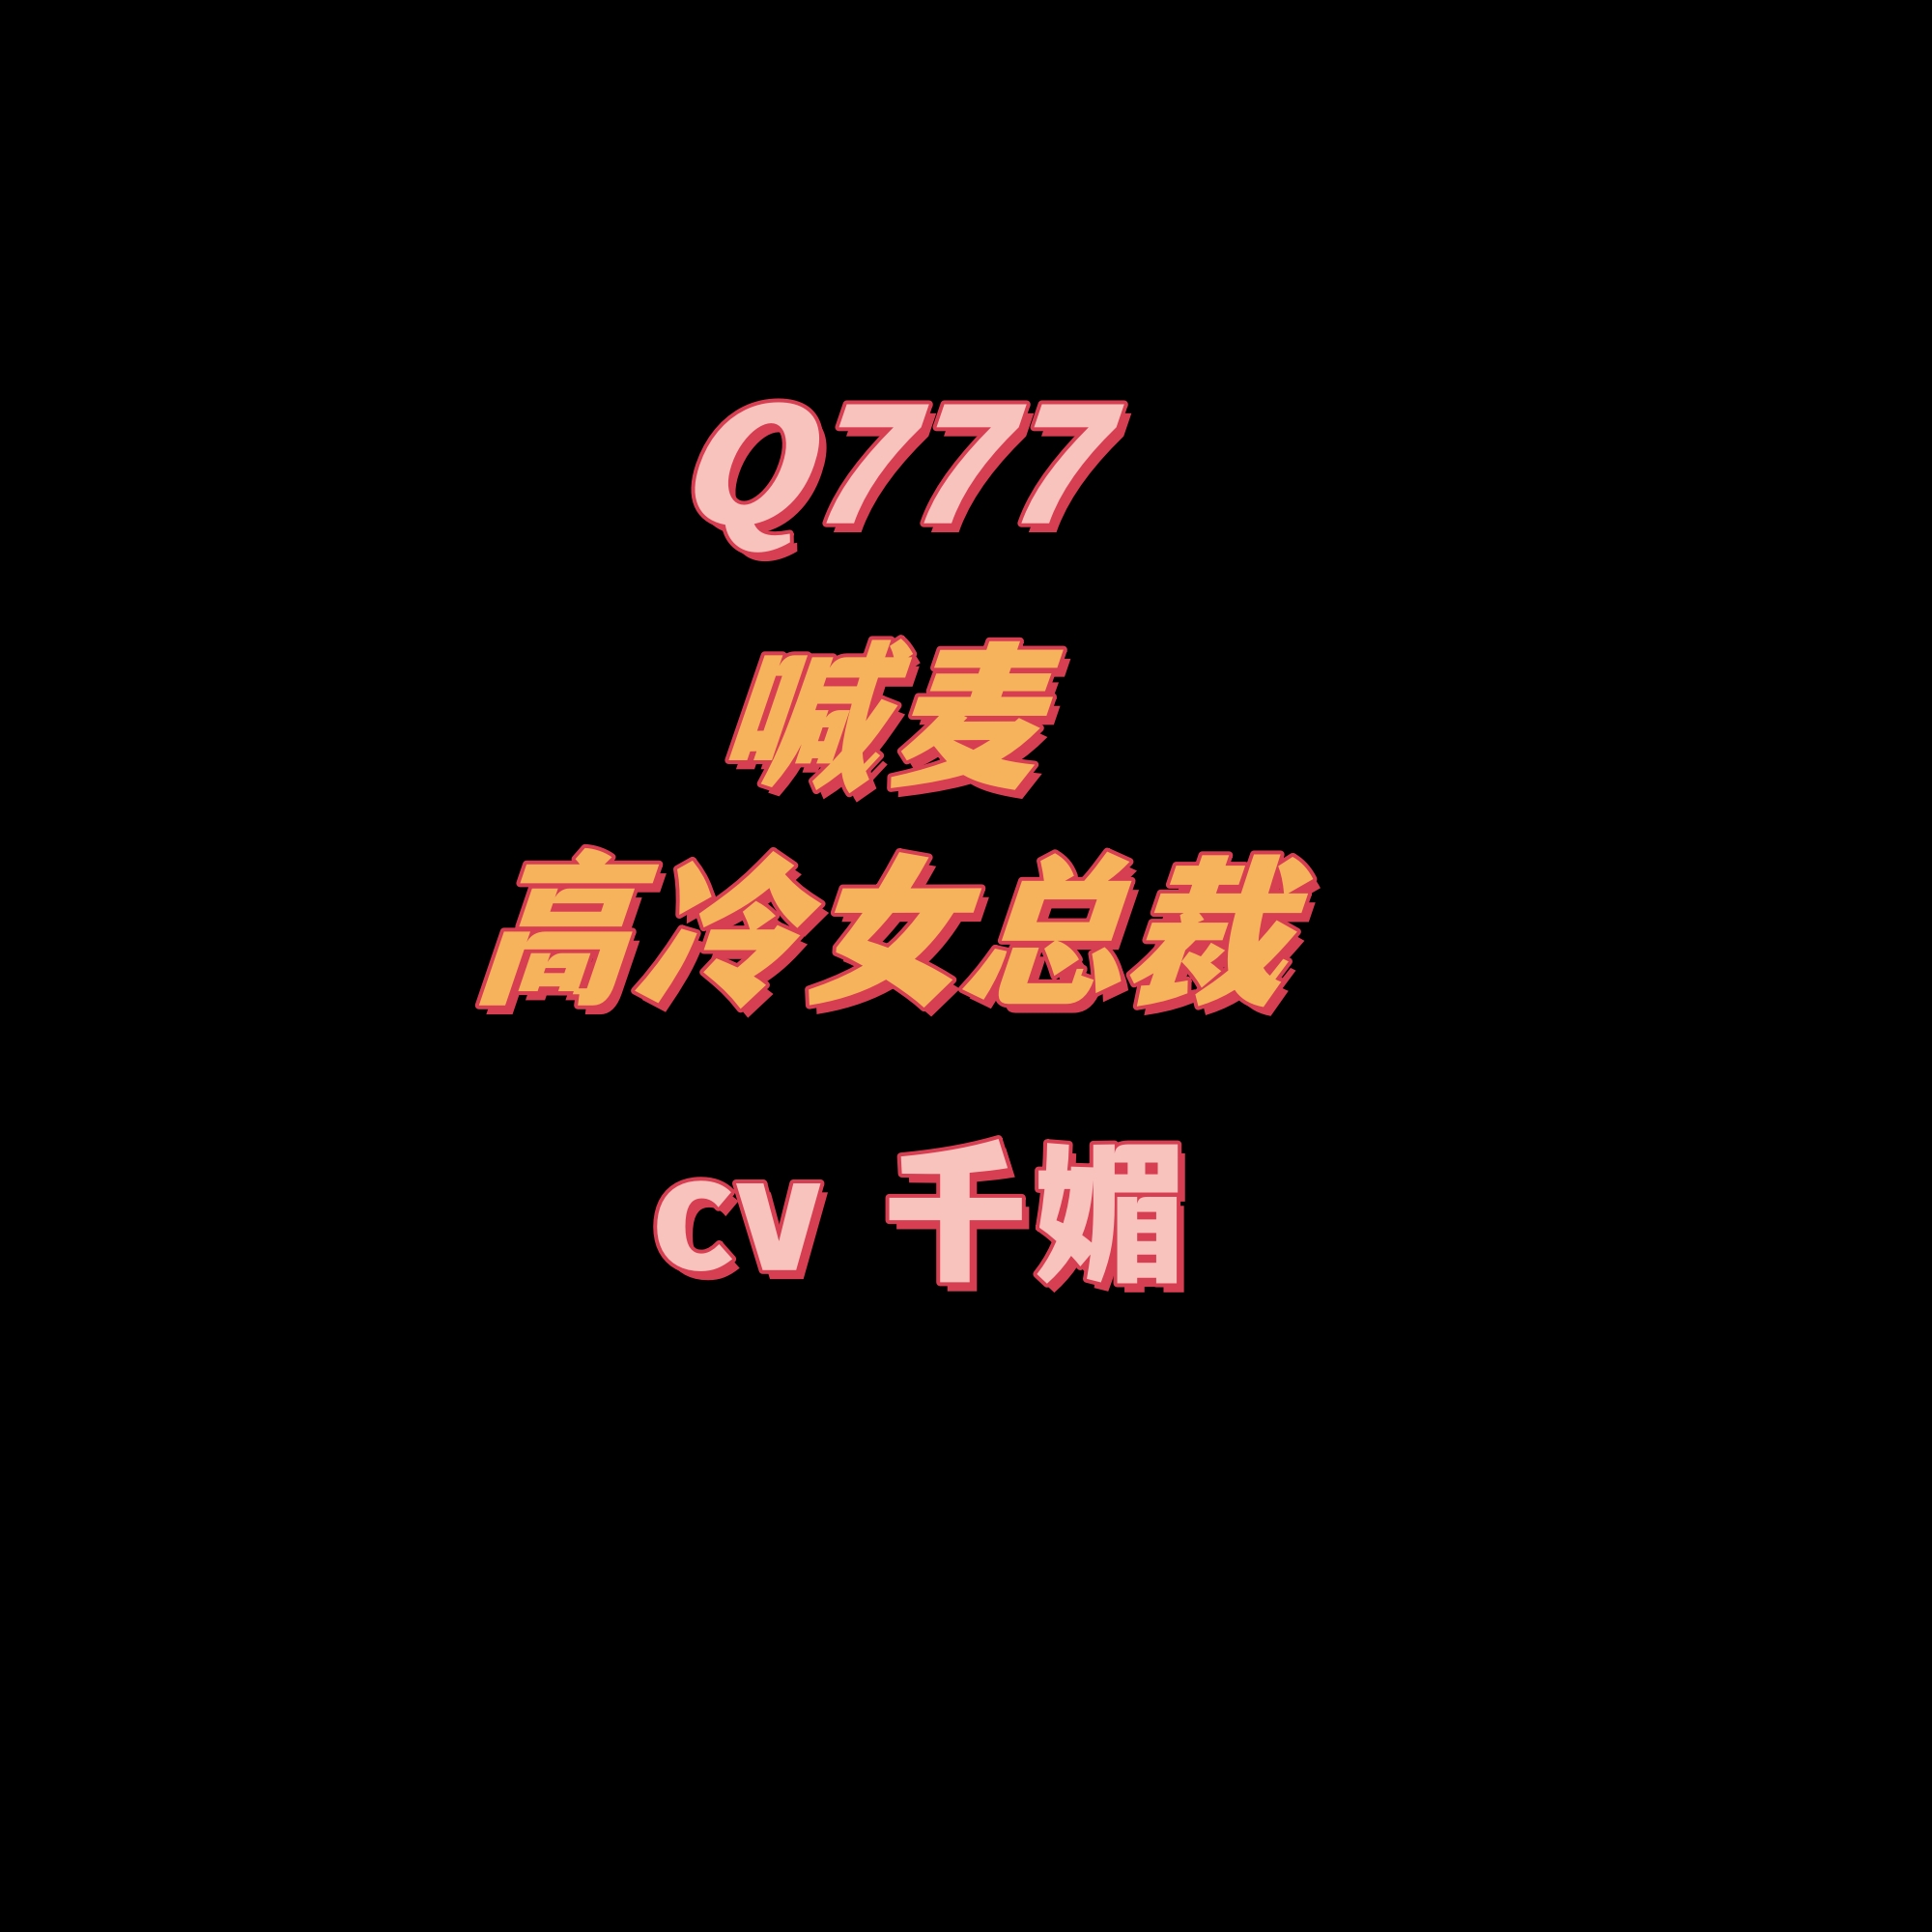 密码保护：Q777